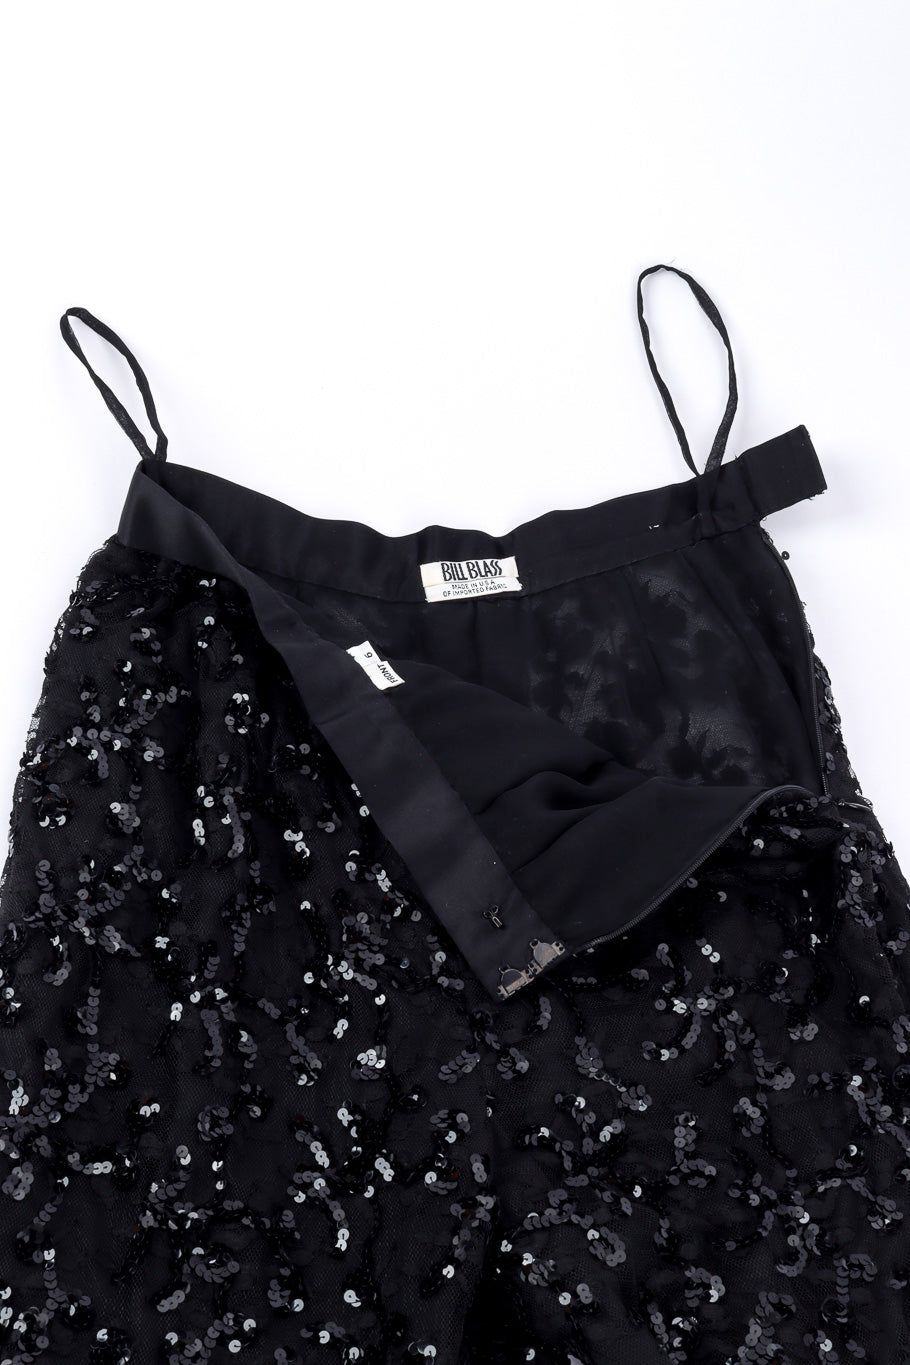 Vintage Bill Blass Sequin Lace Pant unzipped @recessla